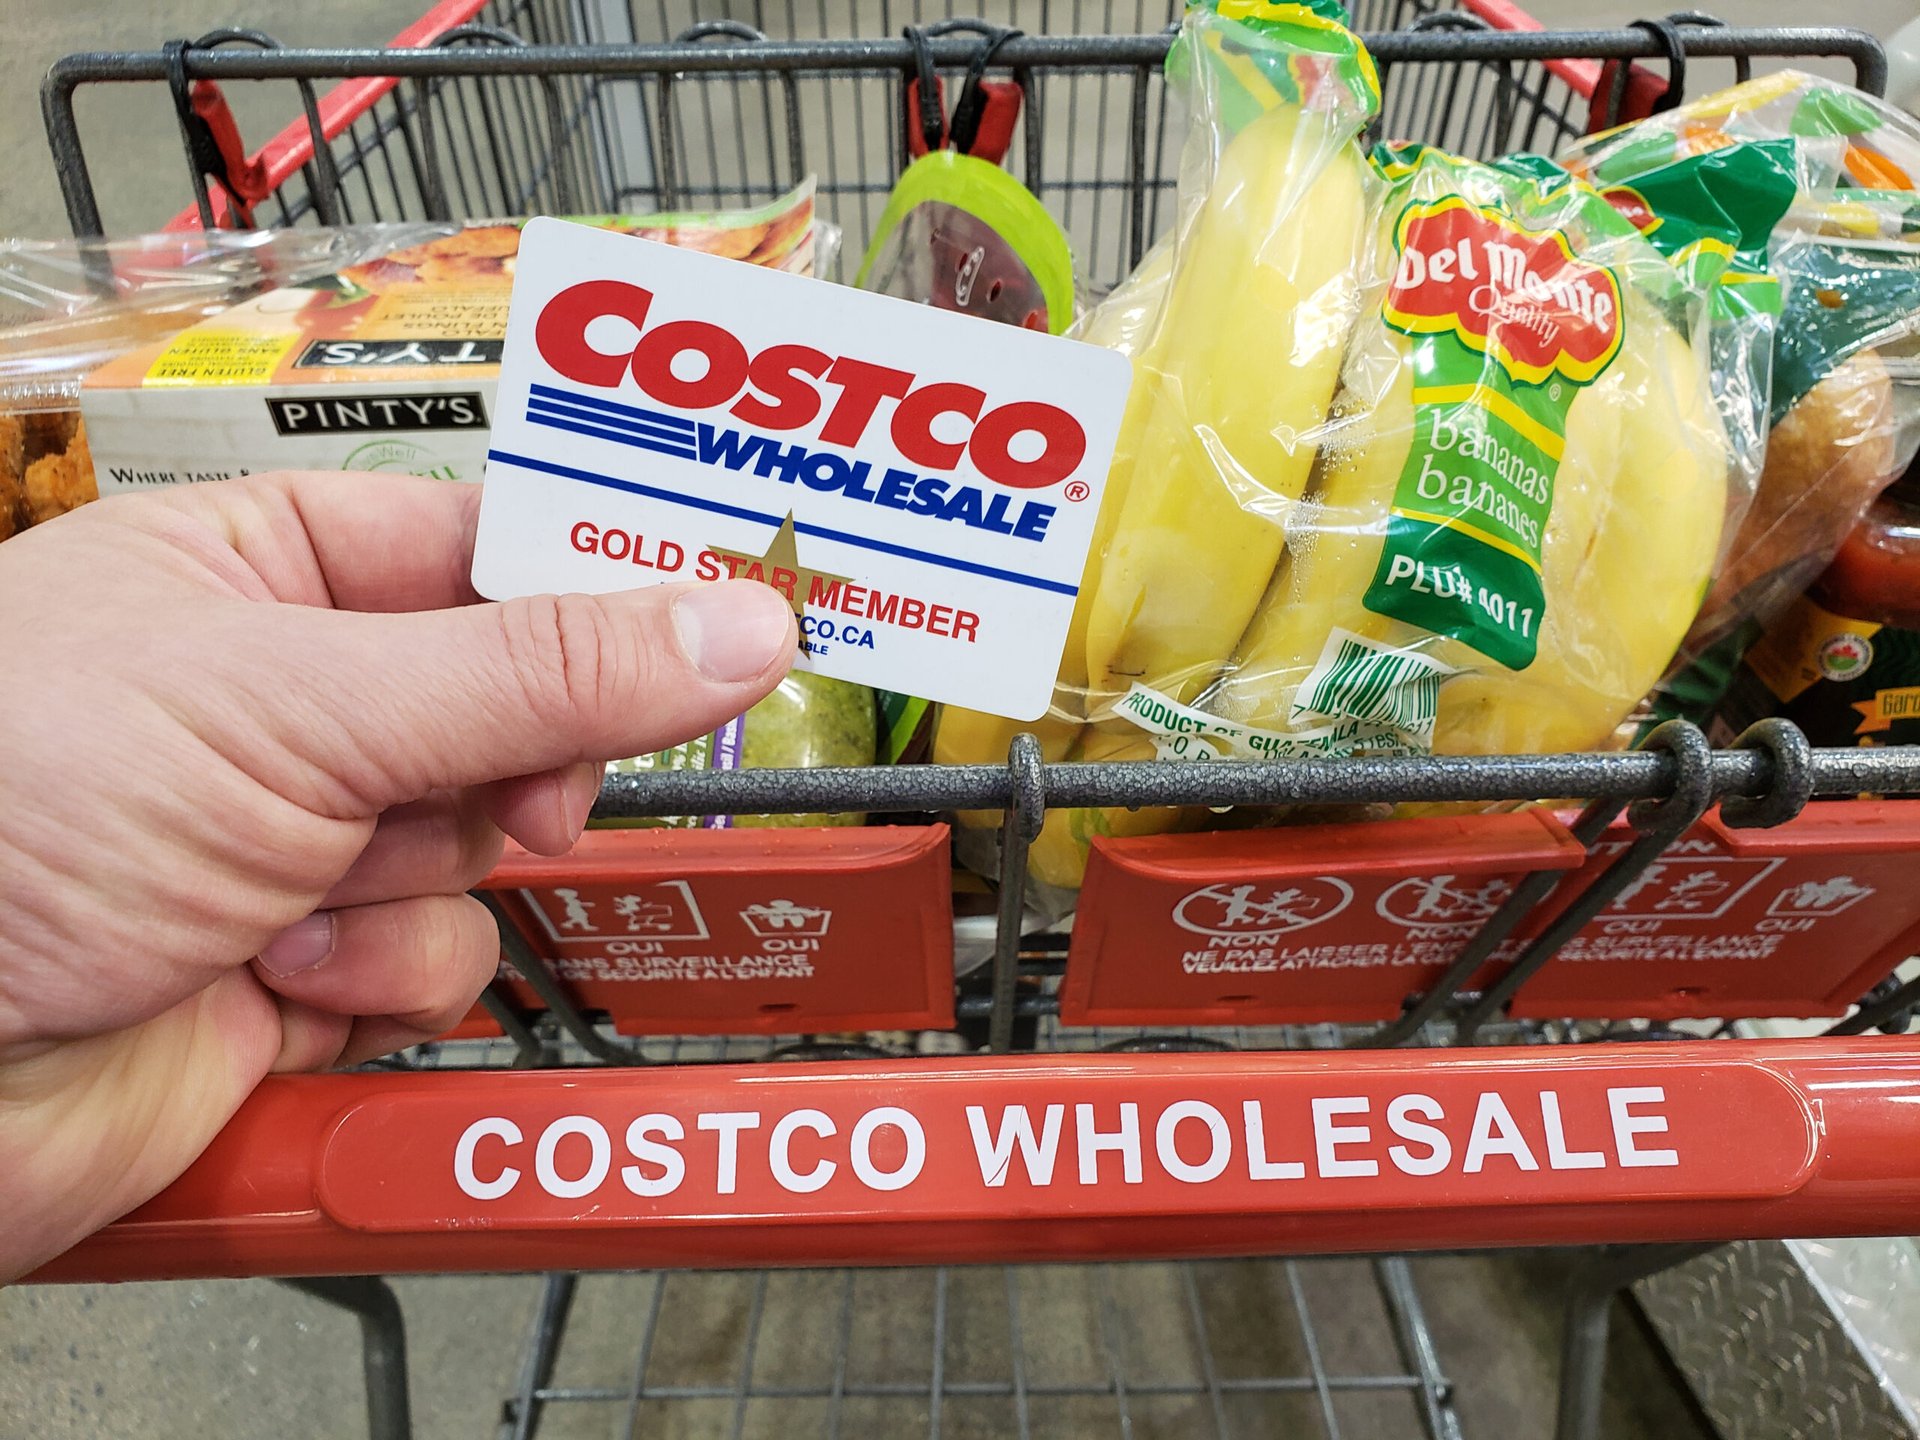 Costco cart